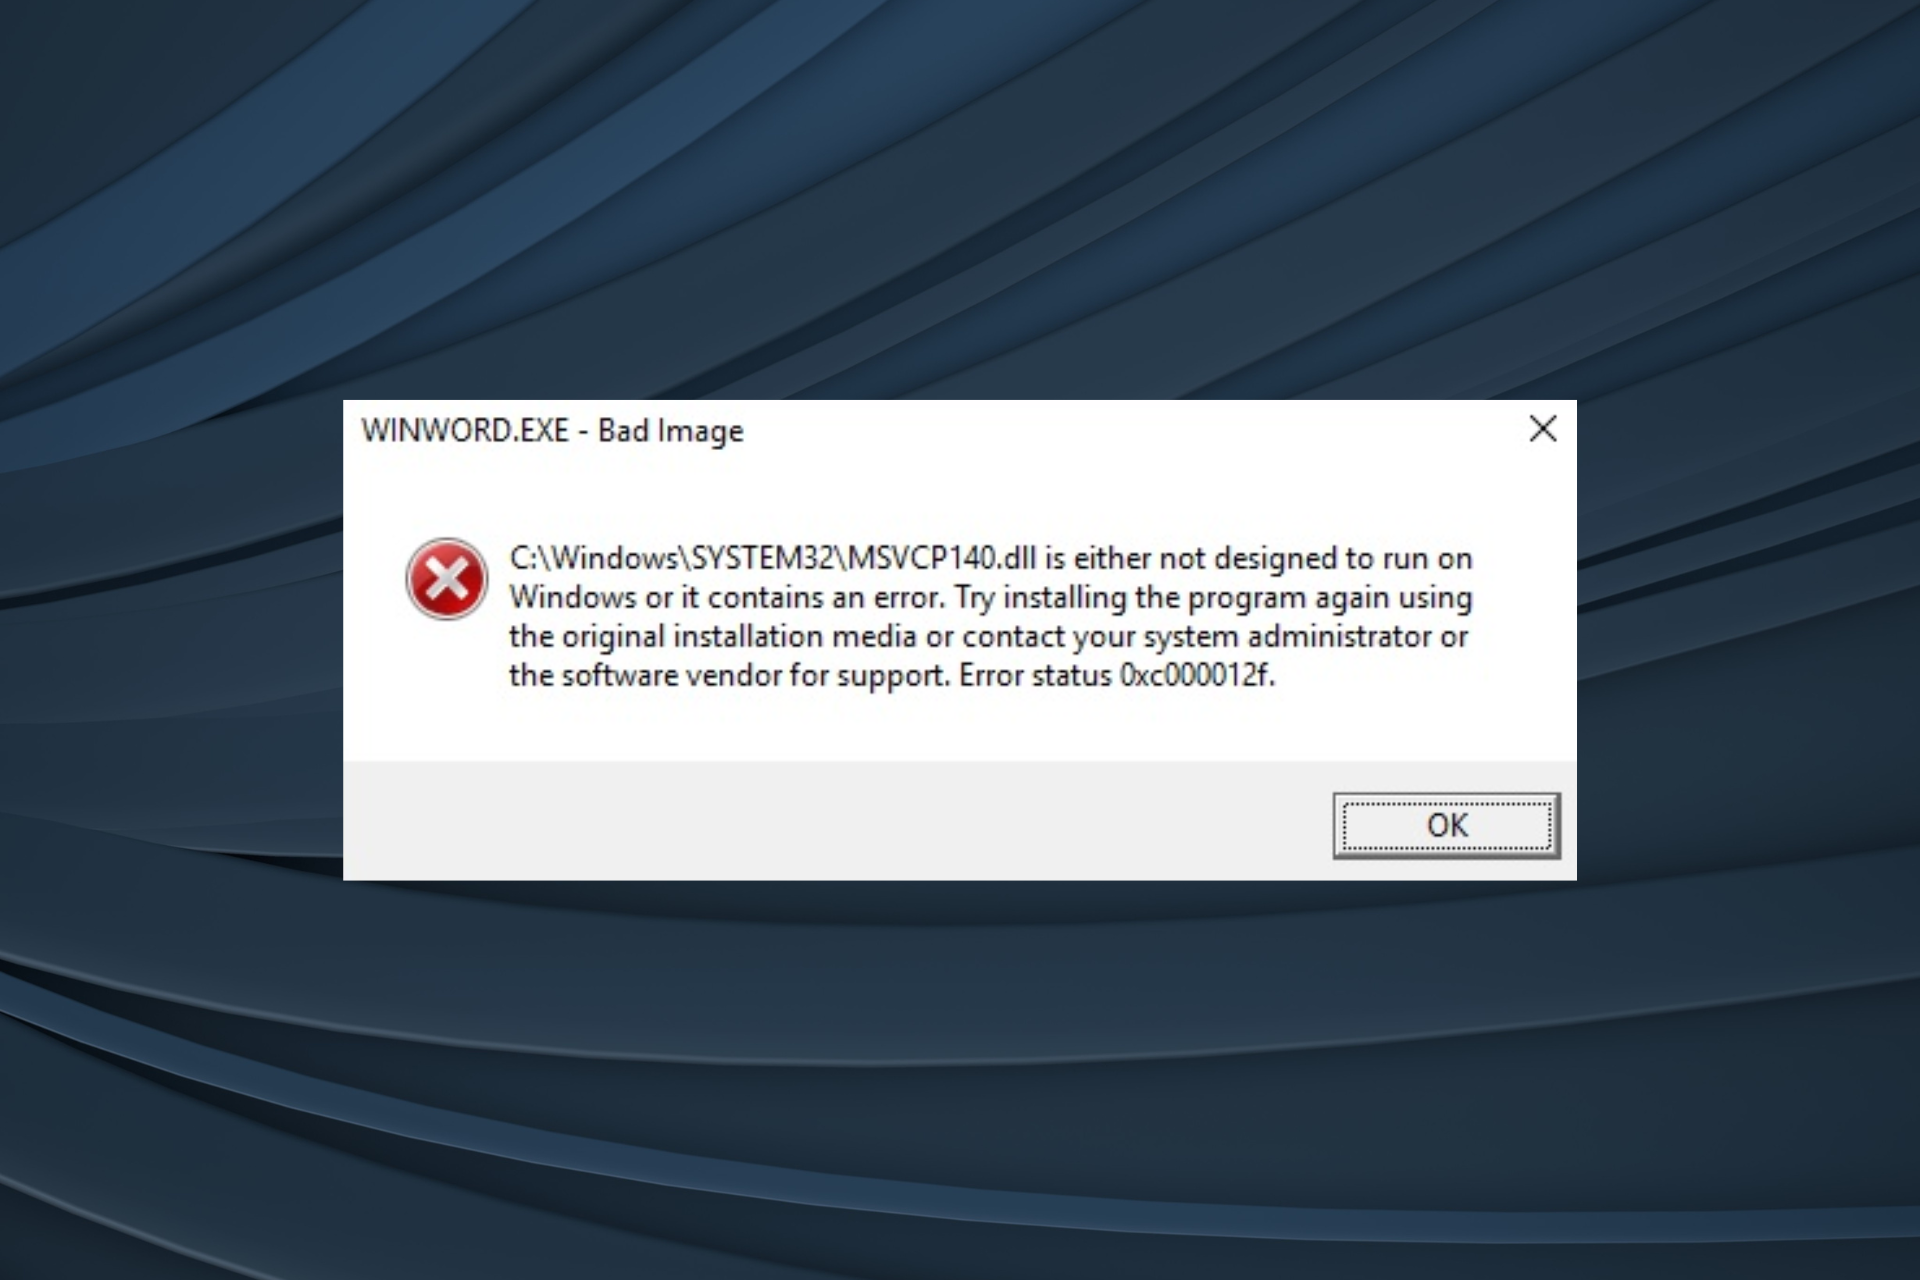 Fixed not designed to run on Windows error